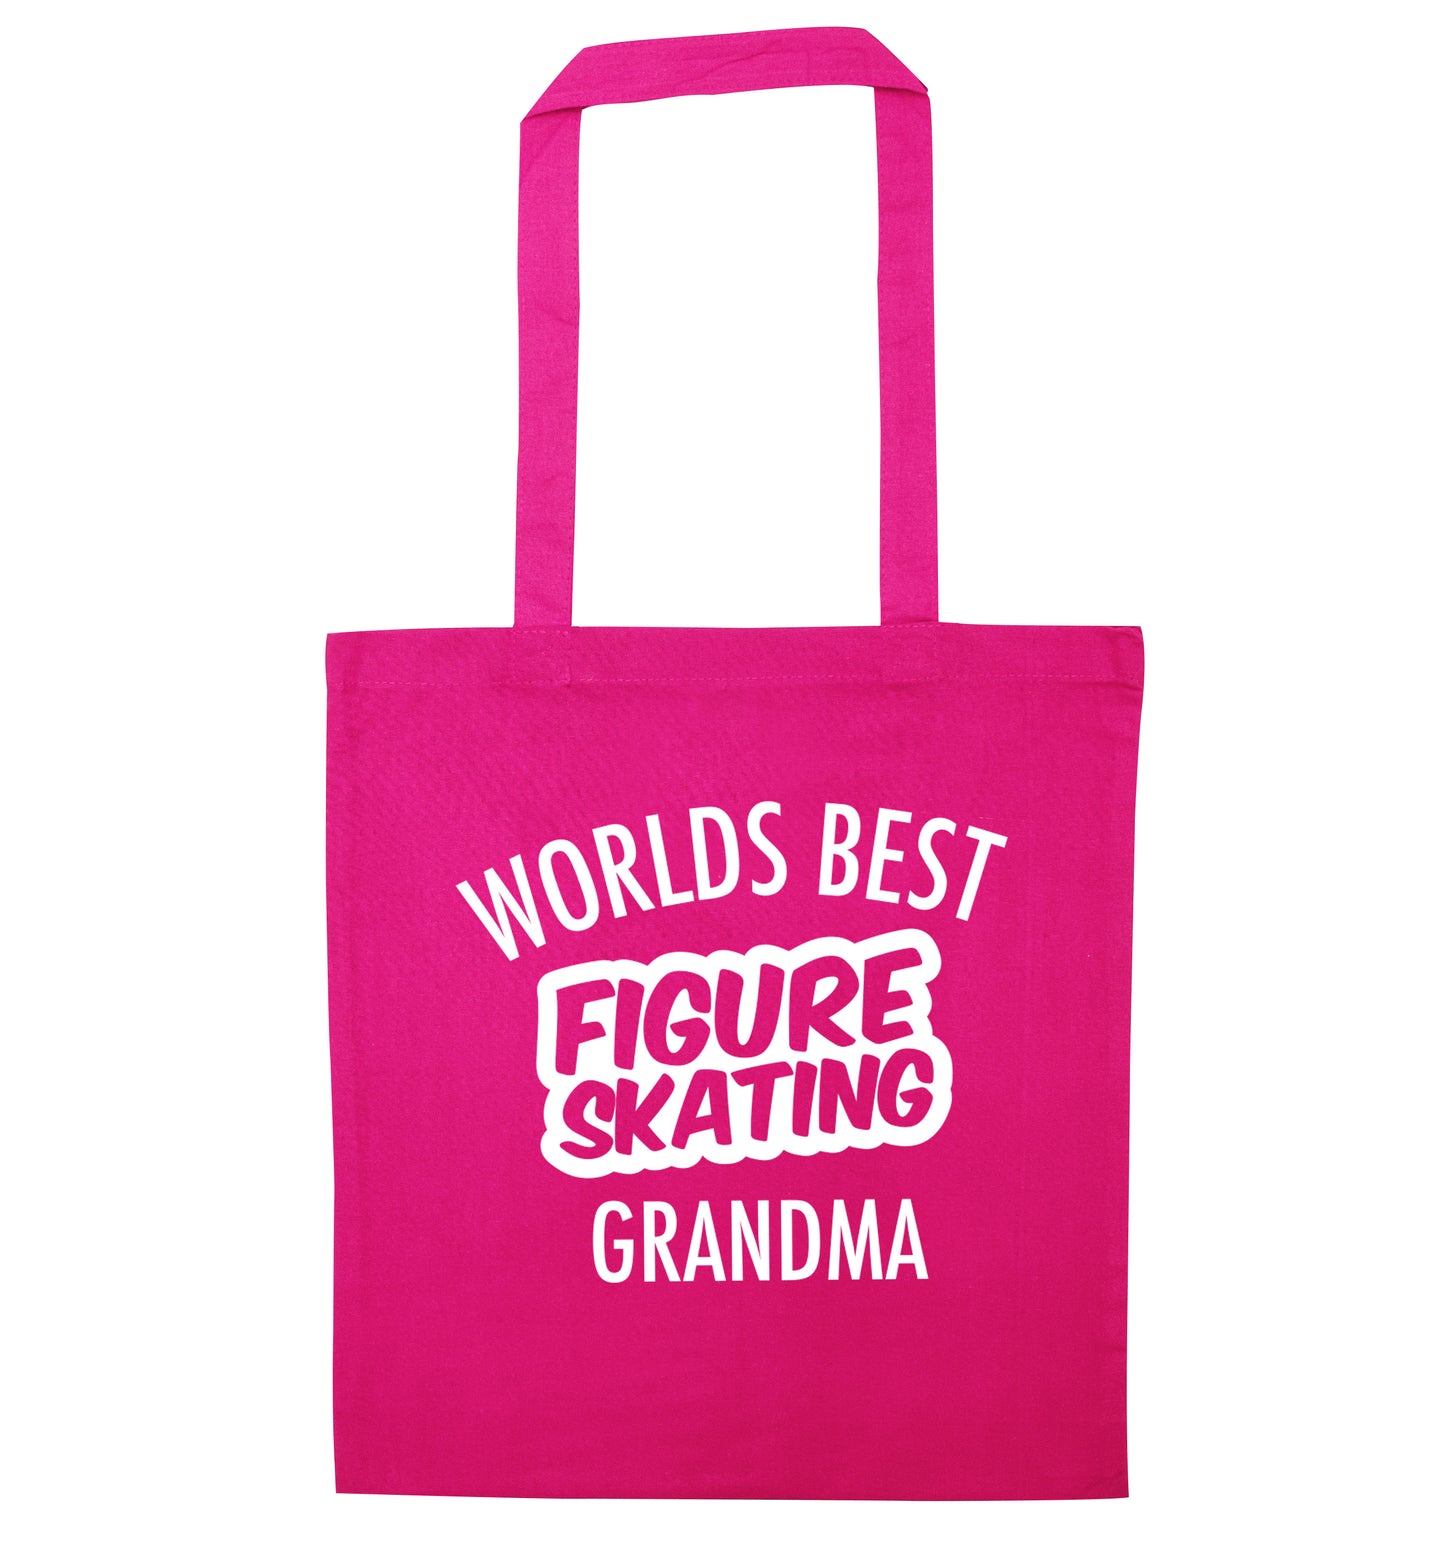 Worlds best figure skating grandma pink tote bag